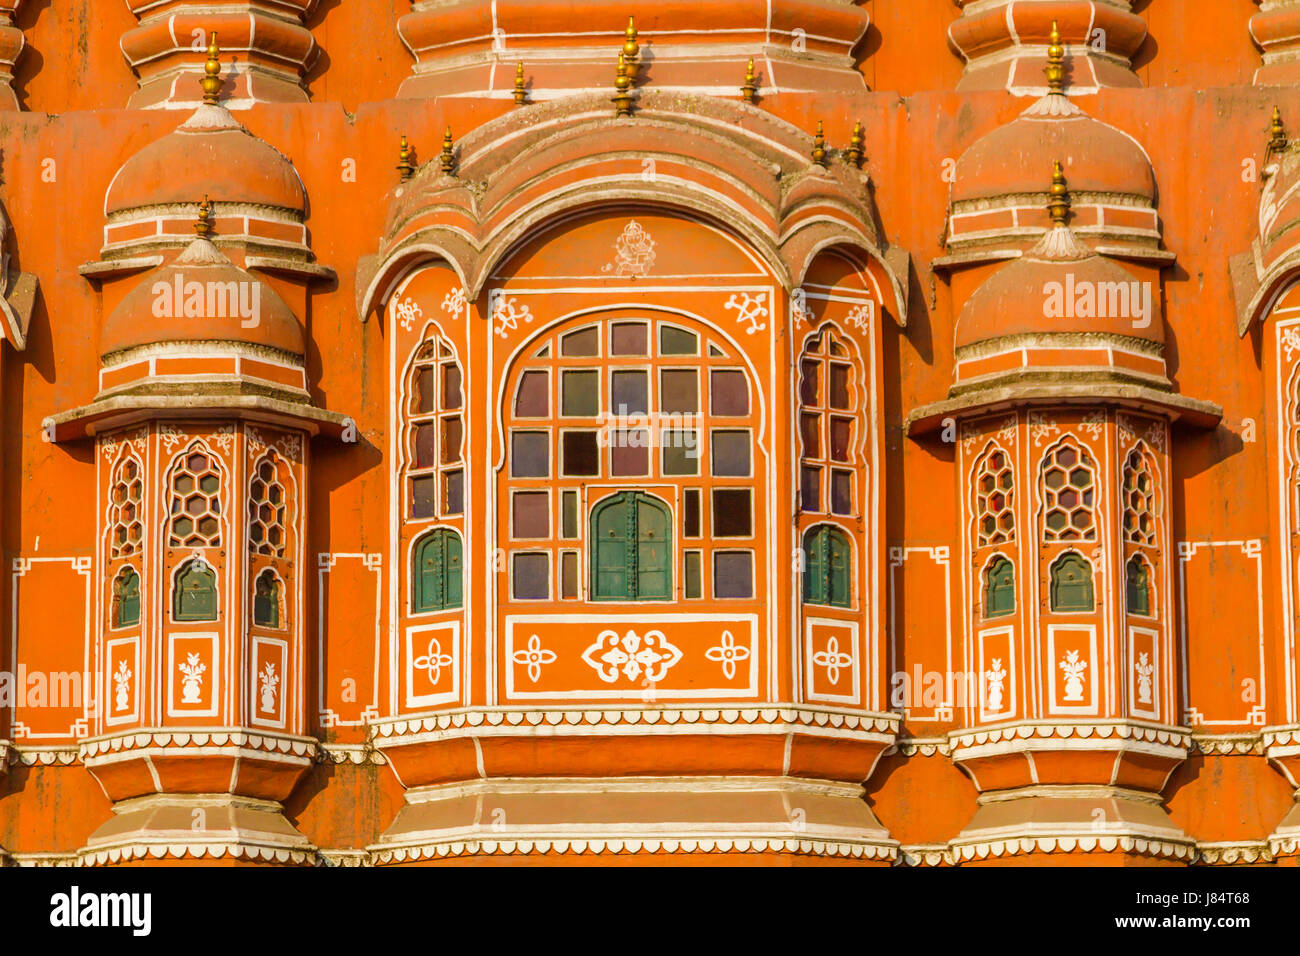 Dettagli architettonici sull'Hawa Mahal - Palazzo dei venti, Jaipur, India. Foto Stock